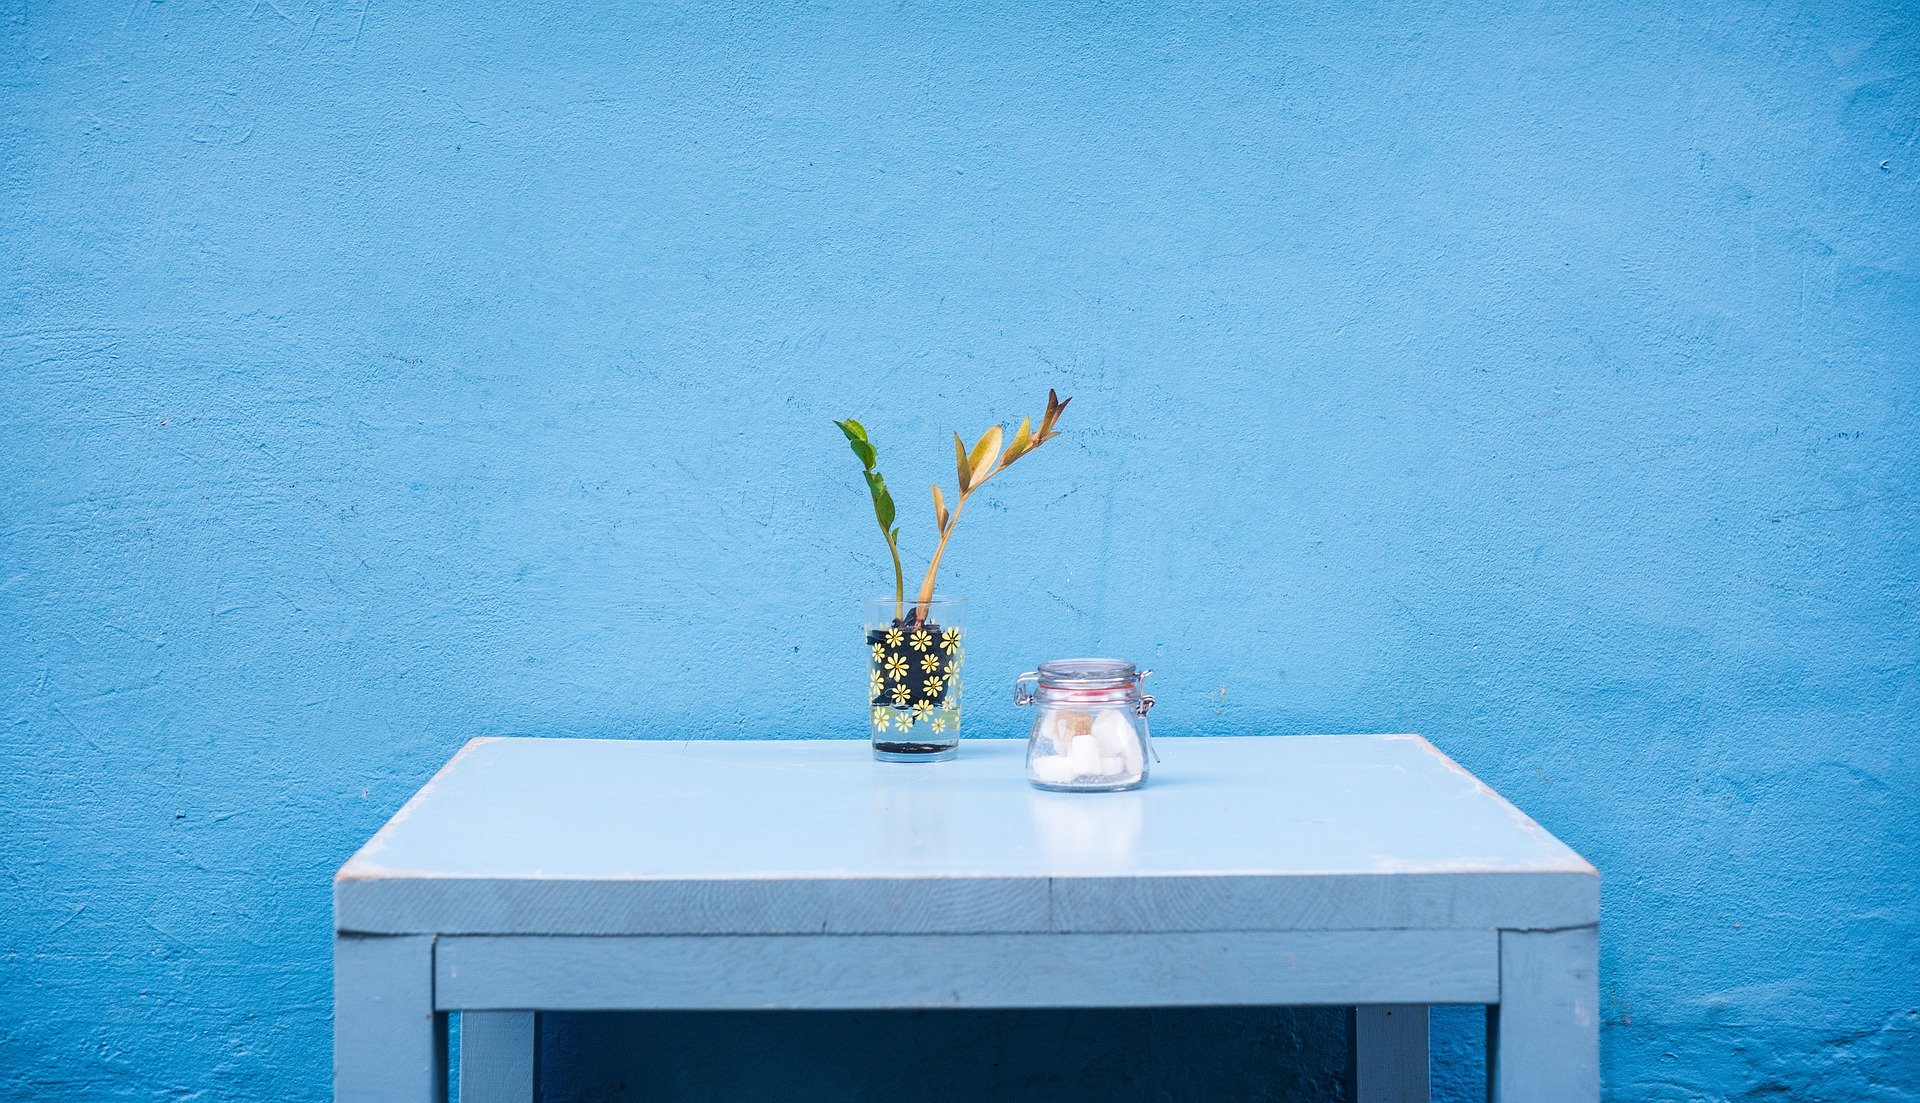 Drewniany stół pomalowany błękitną farbą akrylową